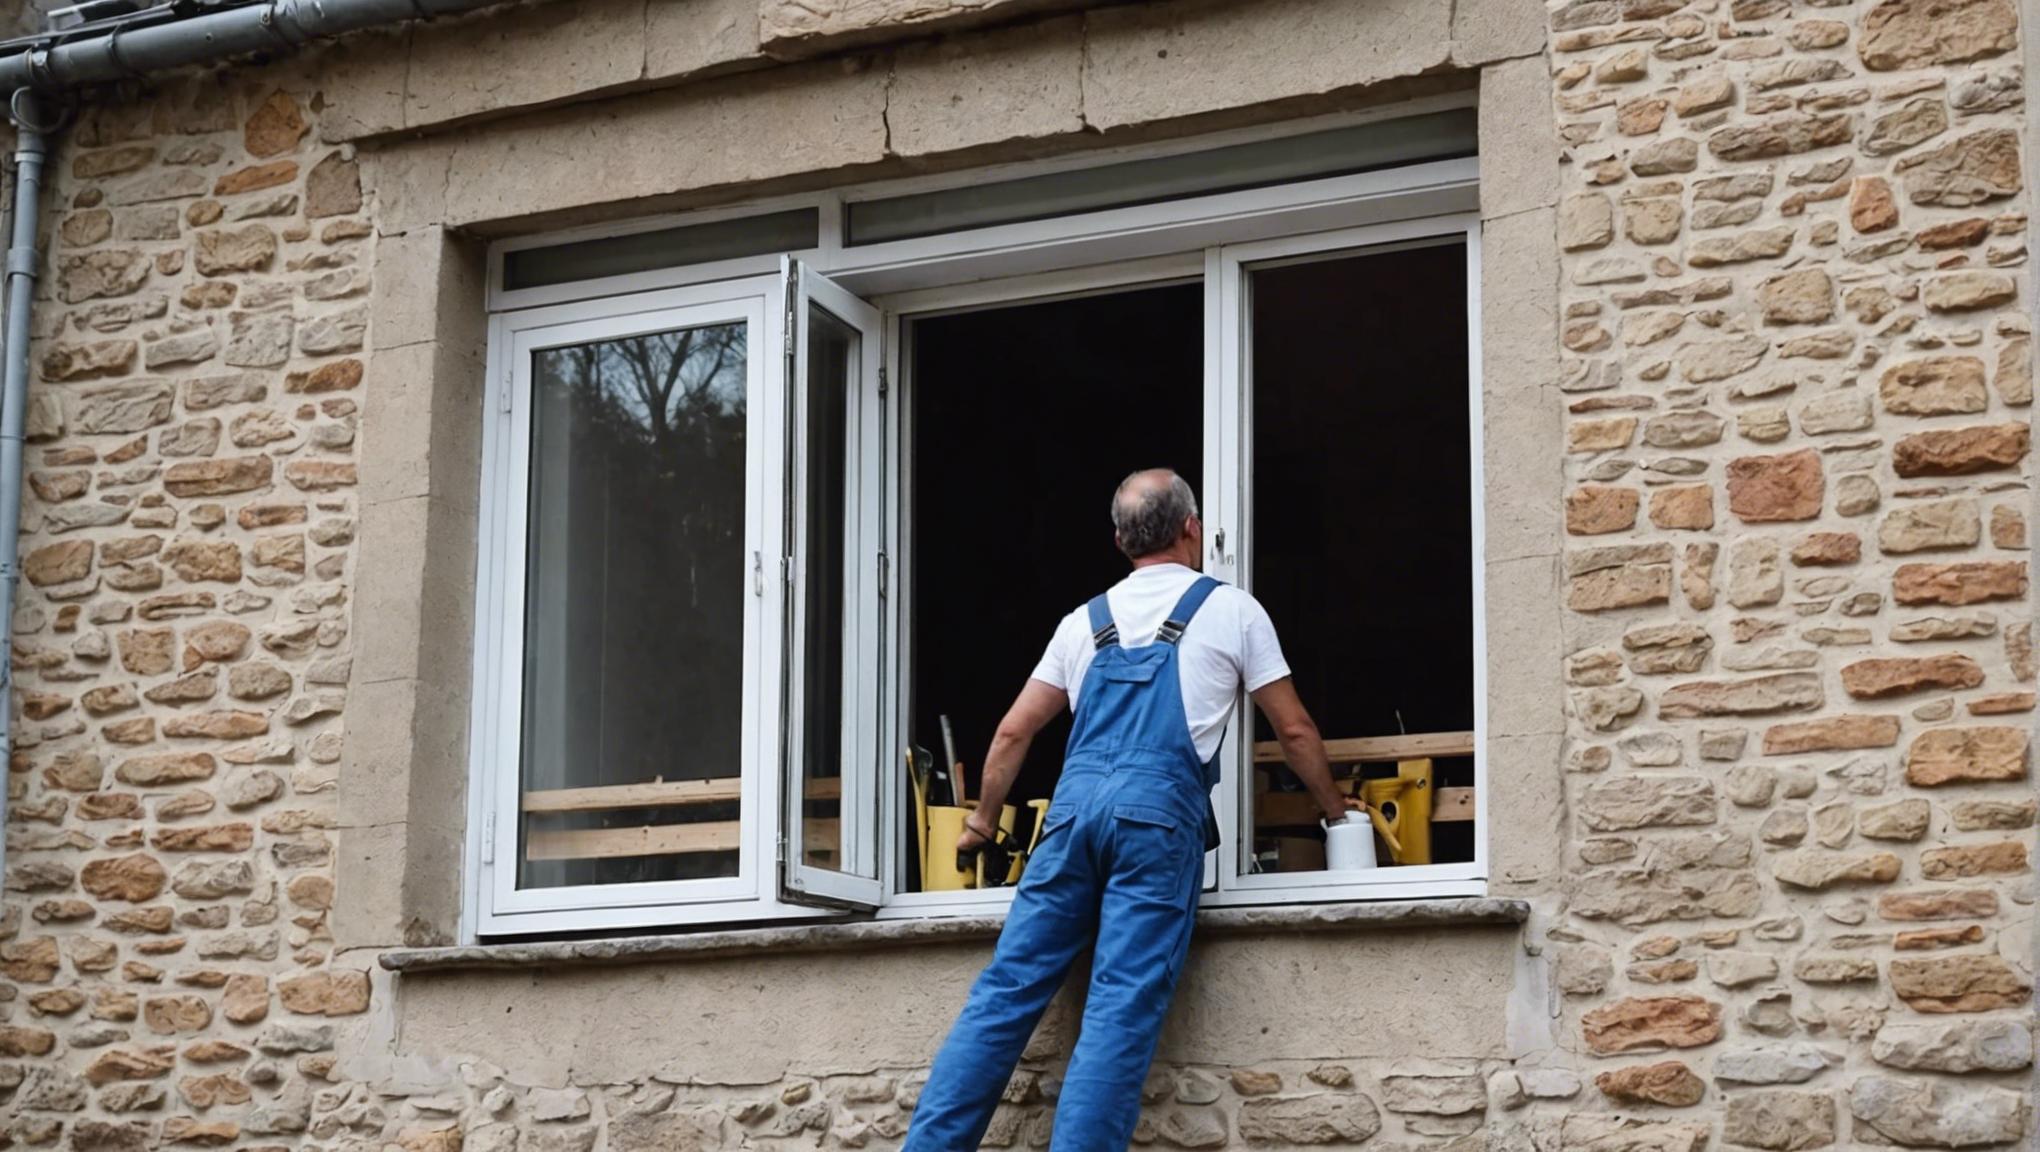 découvrez nos astuces pour réussir à bricoler une fenêtre sans dépenser une fortune. conseils pratiques et économiques pour une rénovation réussie.